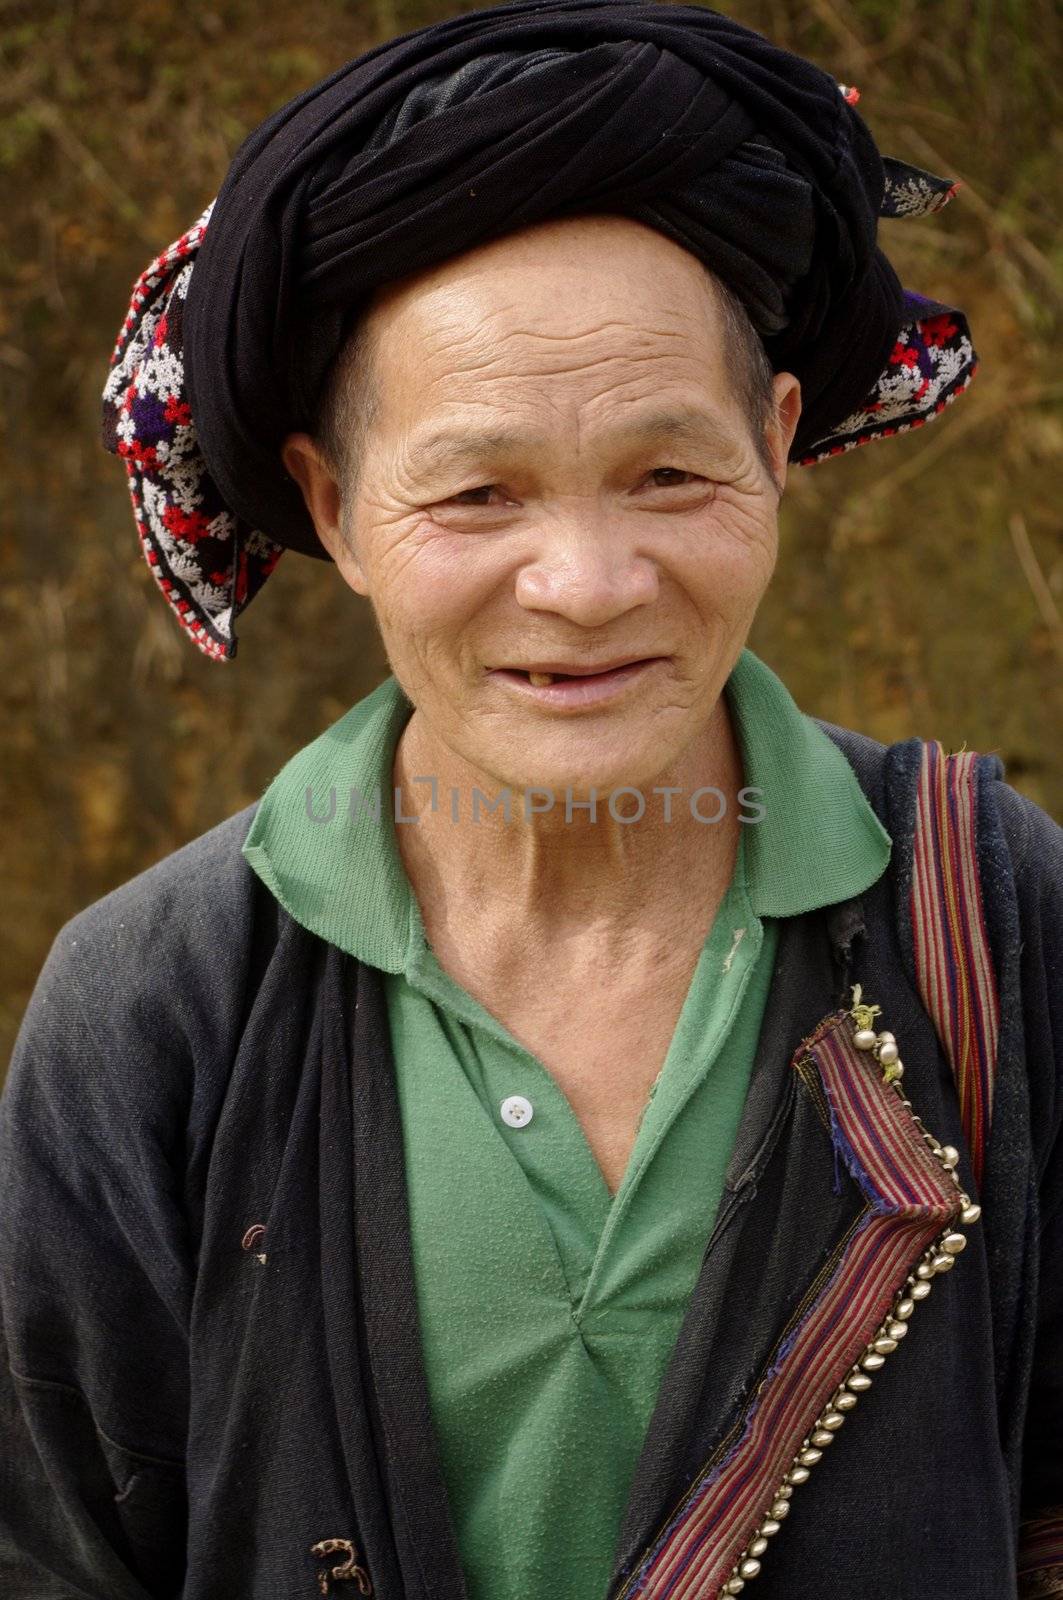 Khmu ethnic man by Duroc